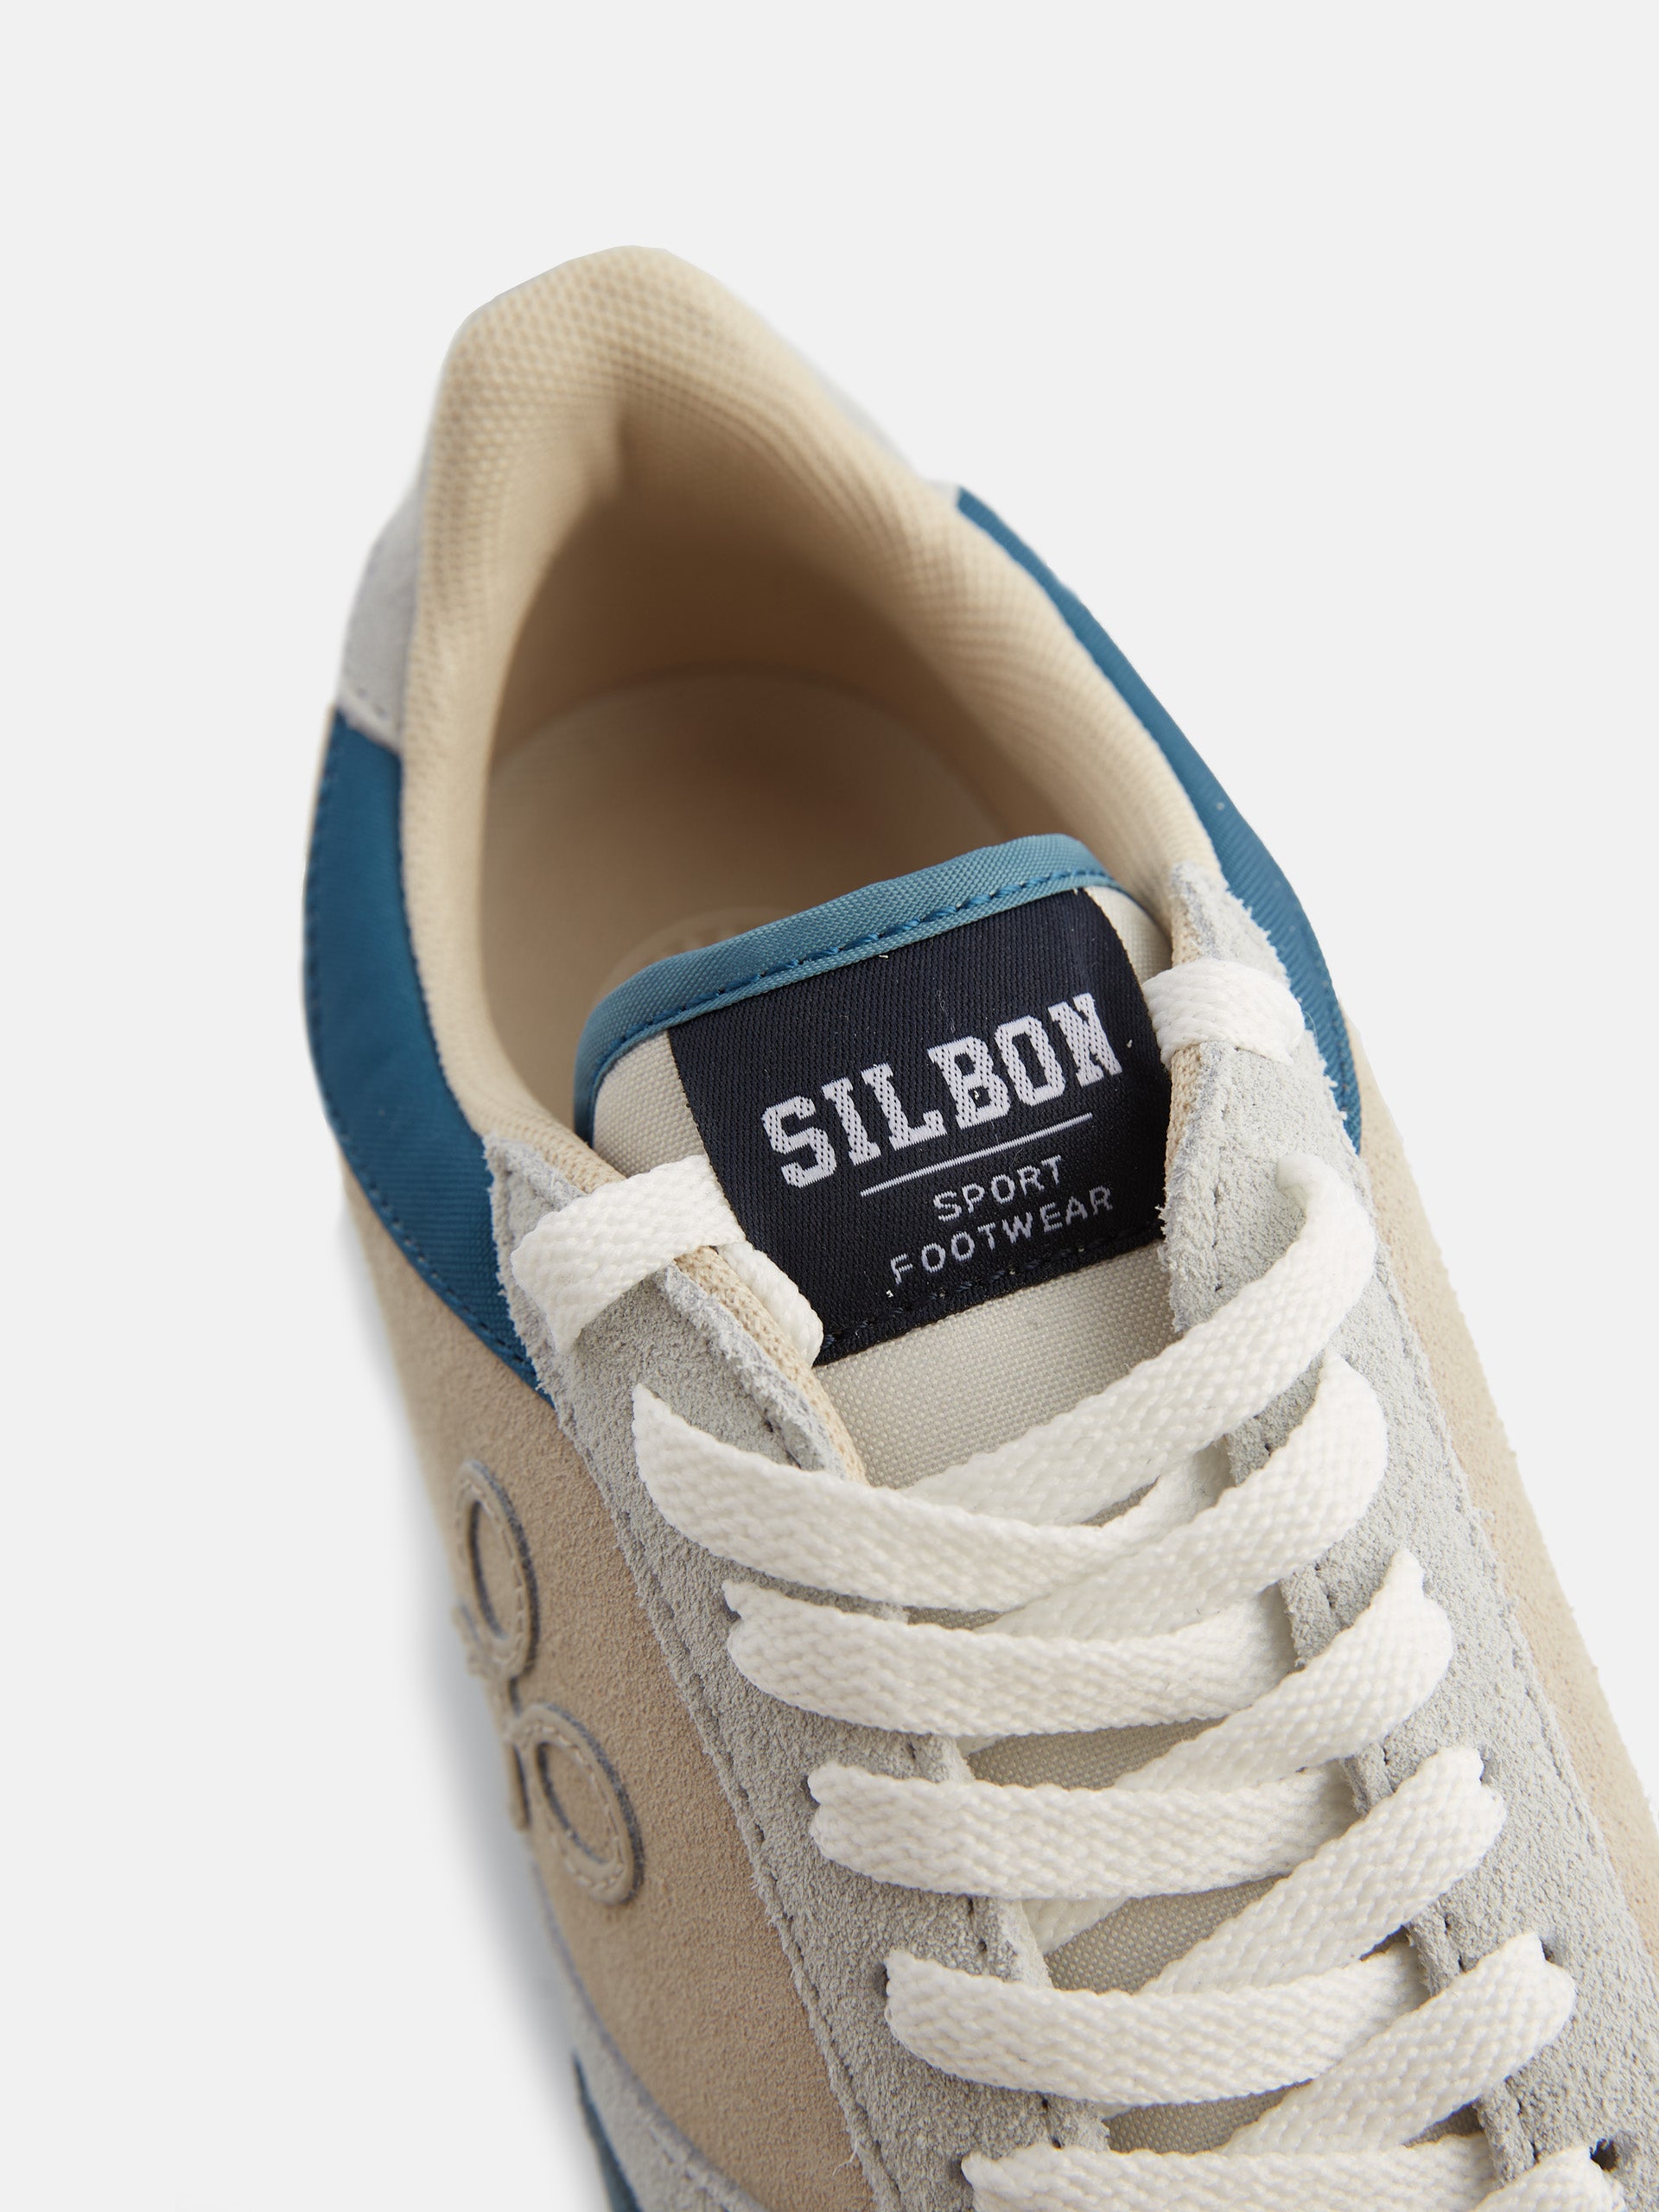 Silbon - Zapato Sport Marrón  zapato-sport-marron #ZapatosCasual #ChaussureCasual #CasualShoe #Silbon  #SilbonRules #EstiloSilbon